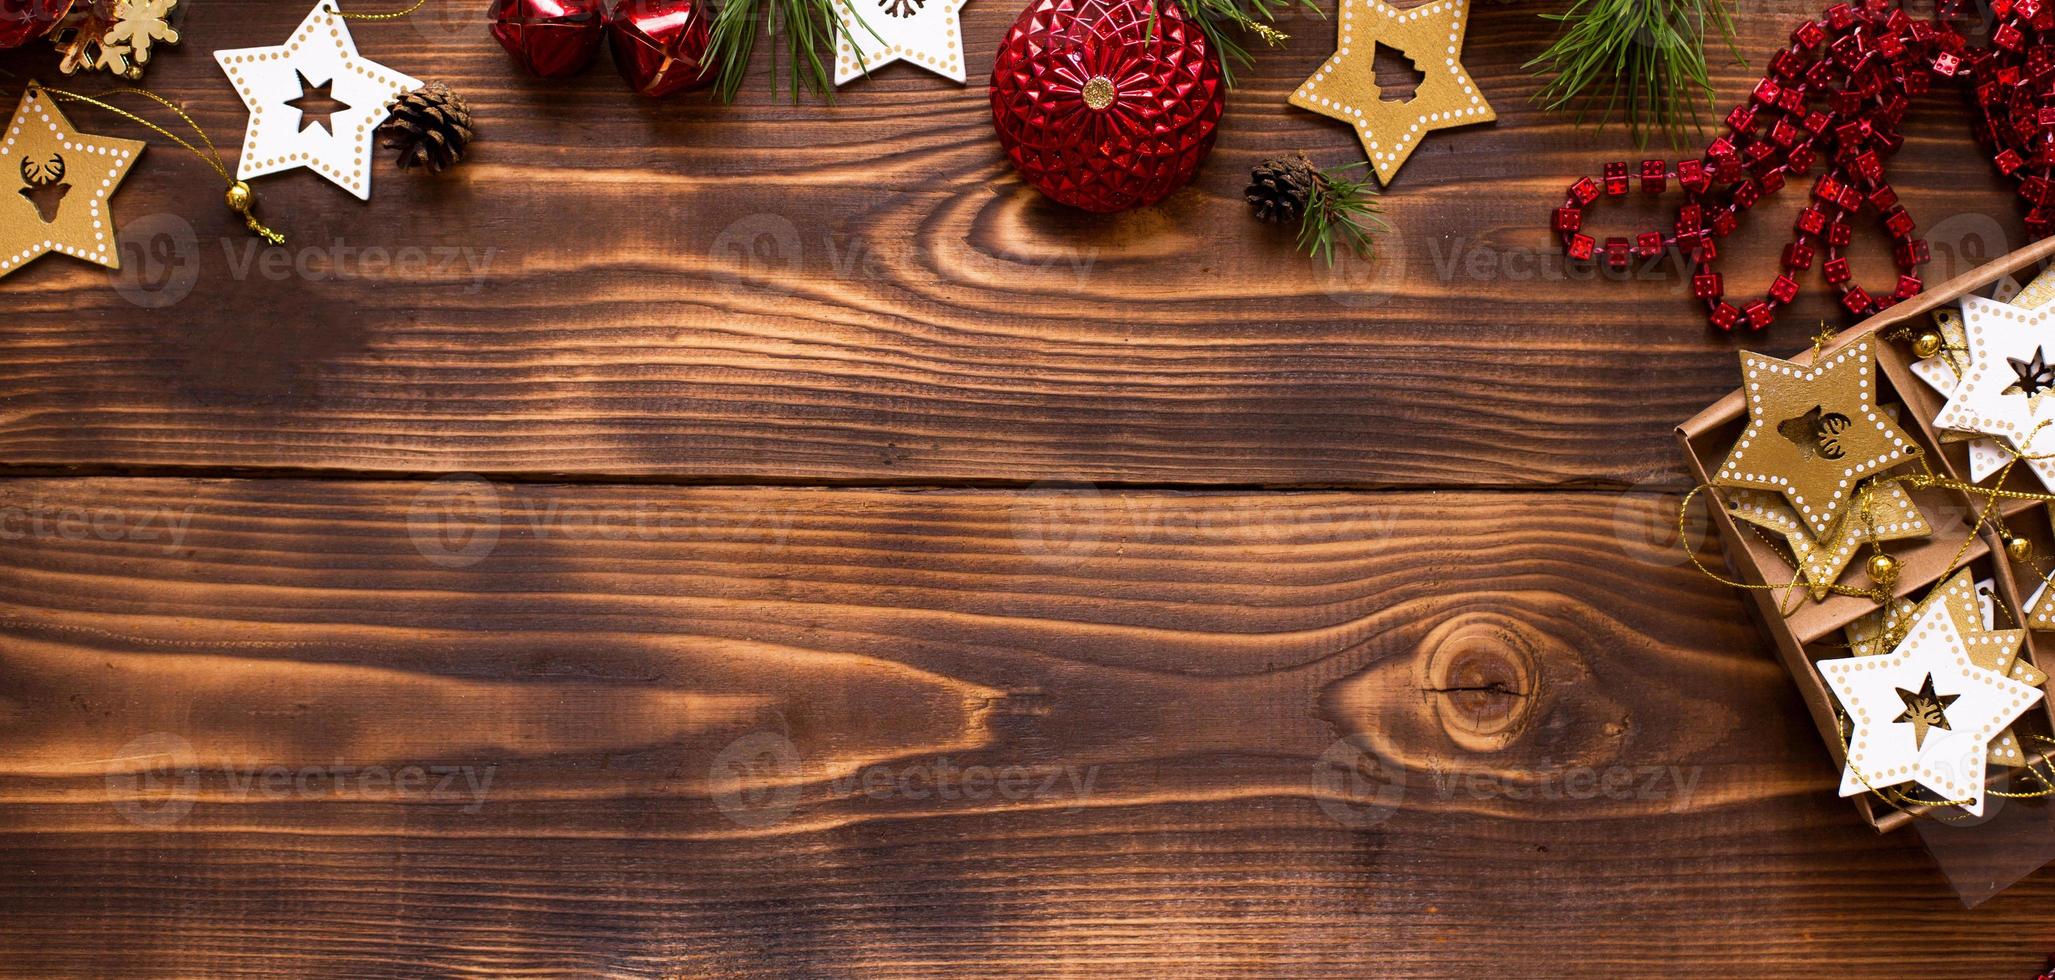 marco con decoración navideña sobre un fondo de madera. año nuevo, ambiente festivo, ramas de abeto verde, estrellas decorativas, caja de regalo, cuentas, bolas, campanas, conos. espacio para texto, plano foto